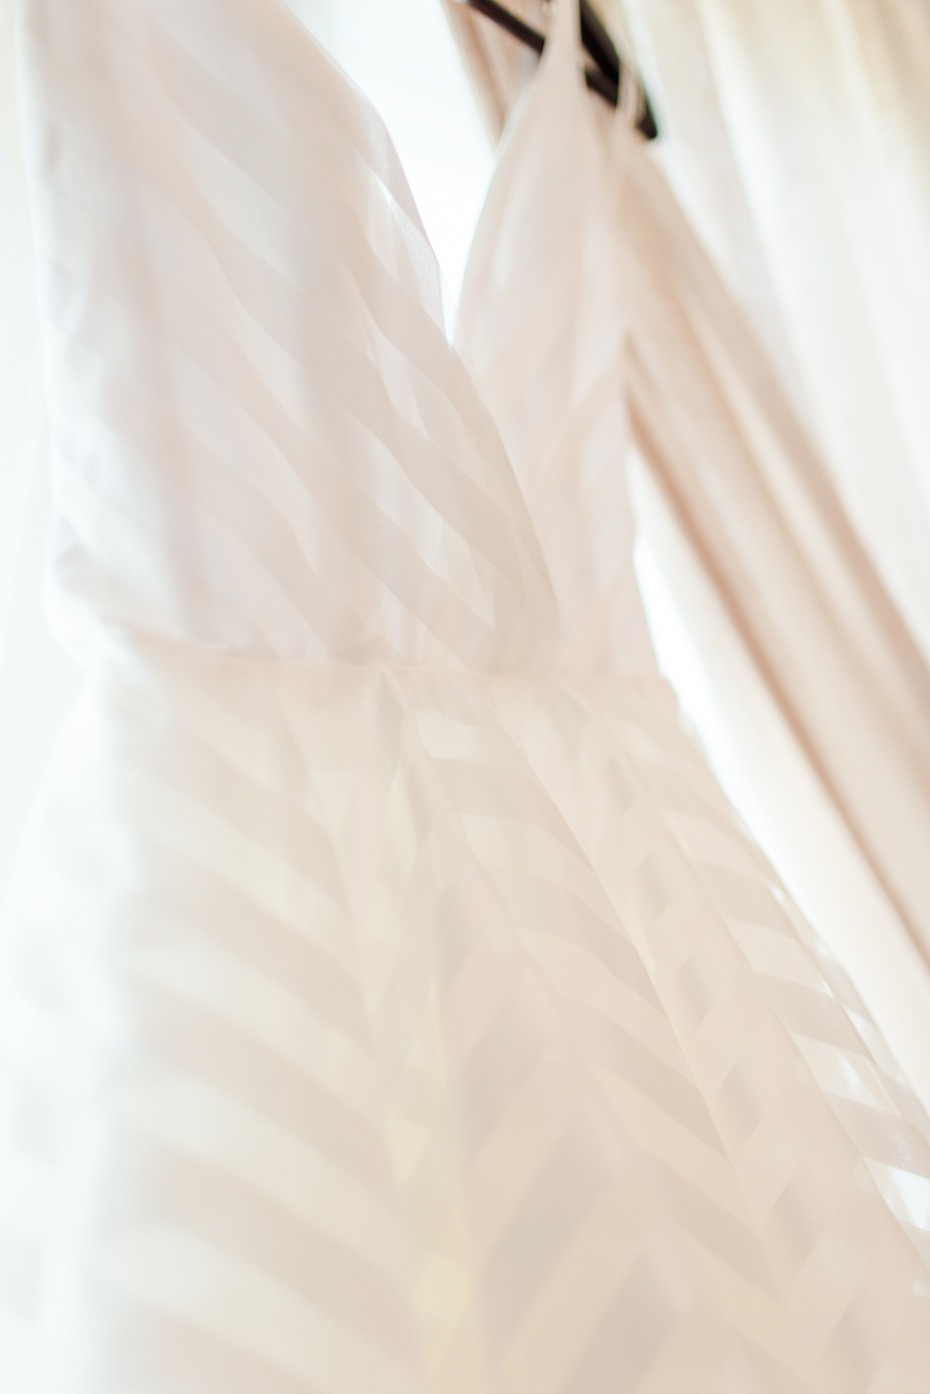 striped wedding dress